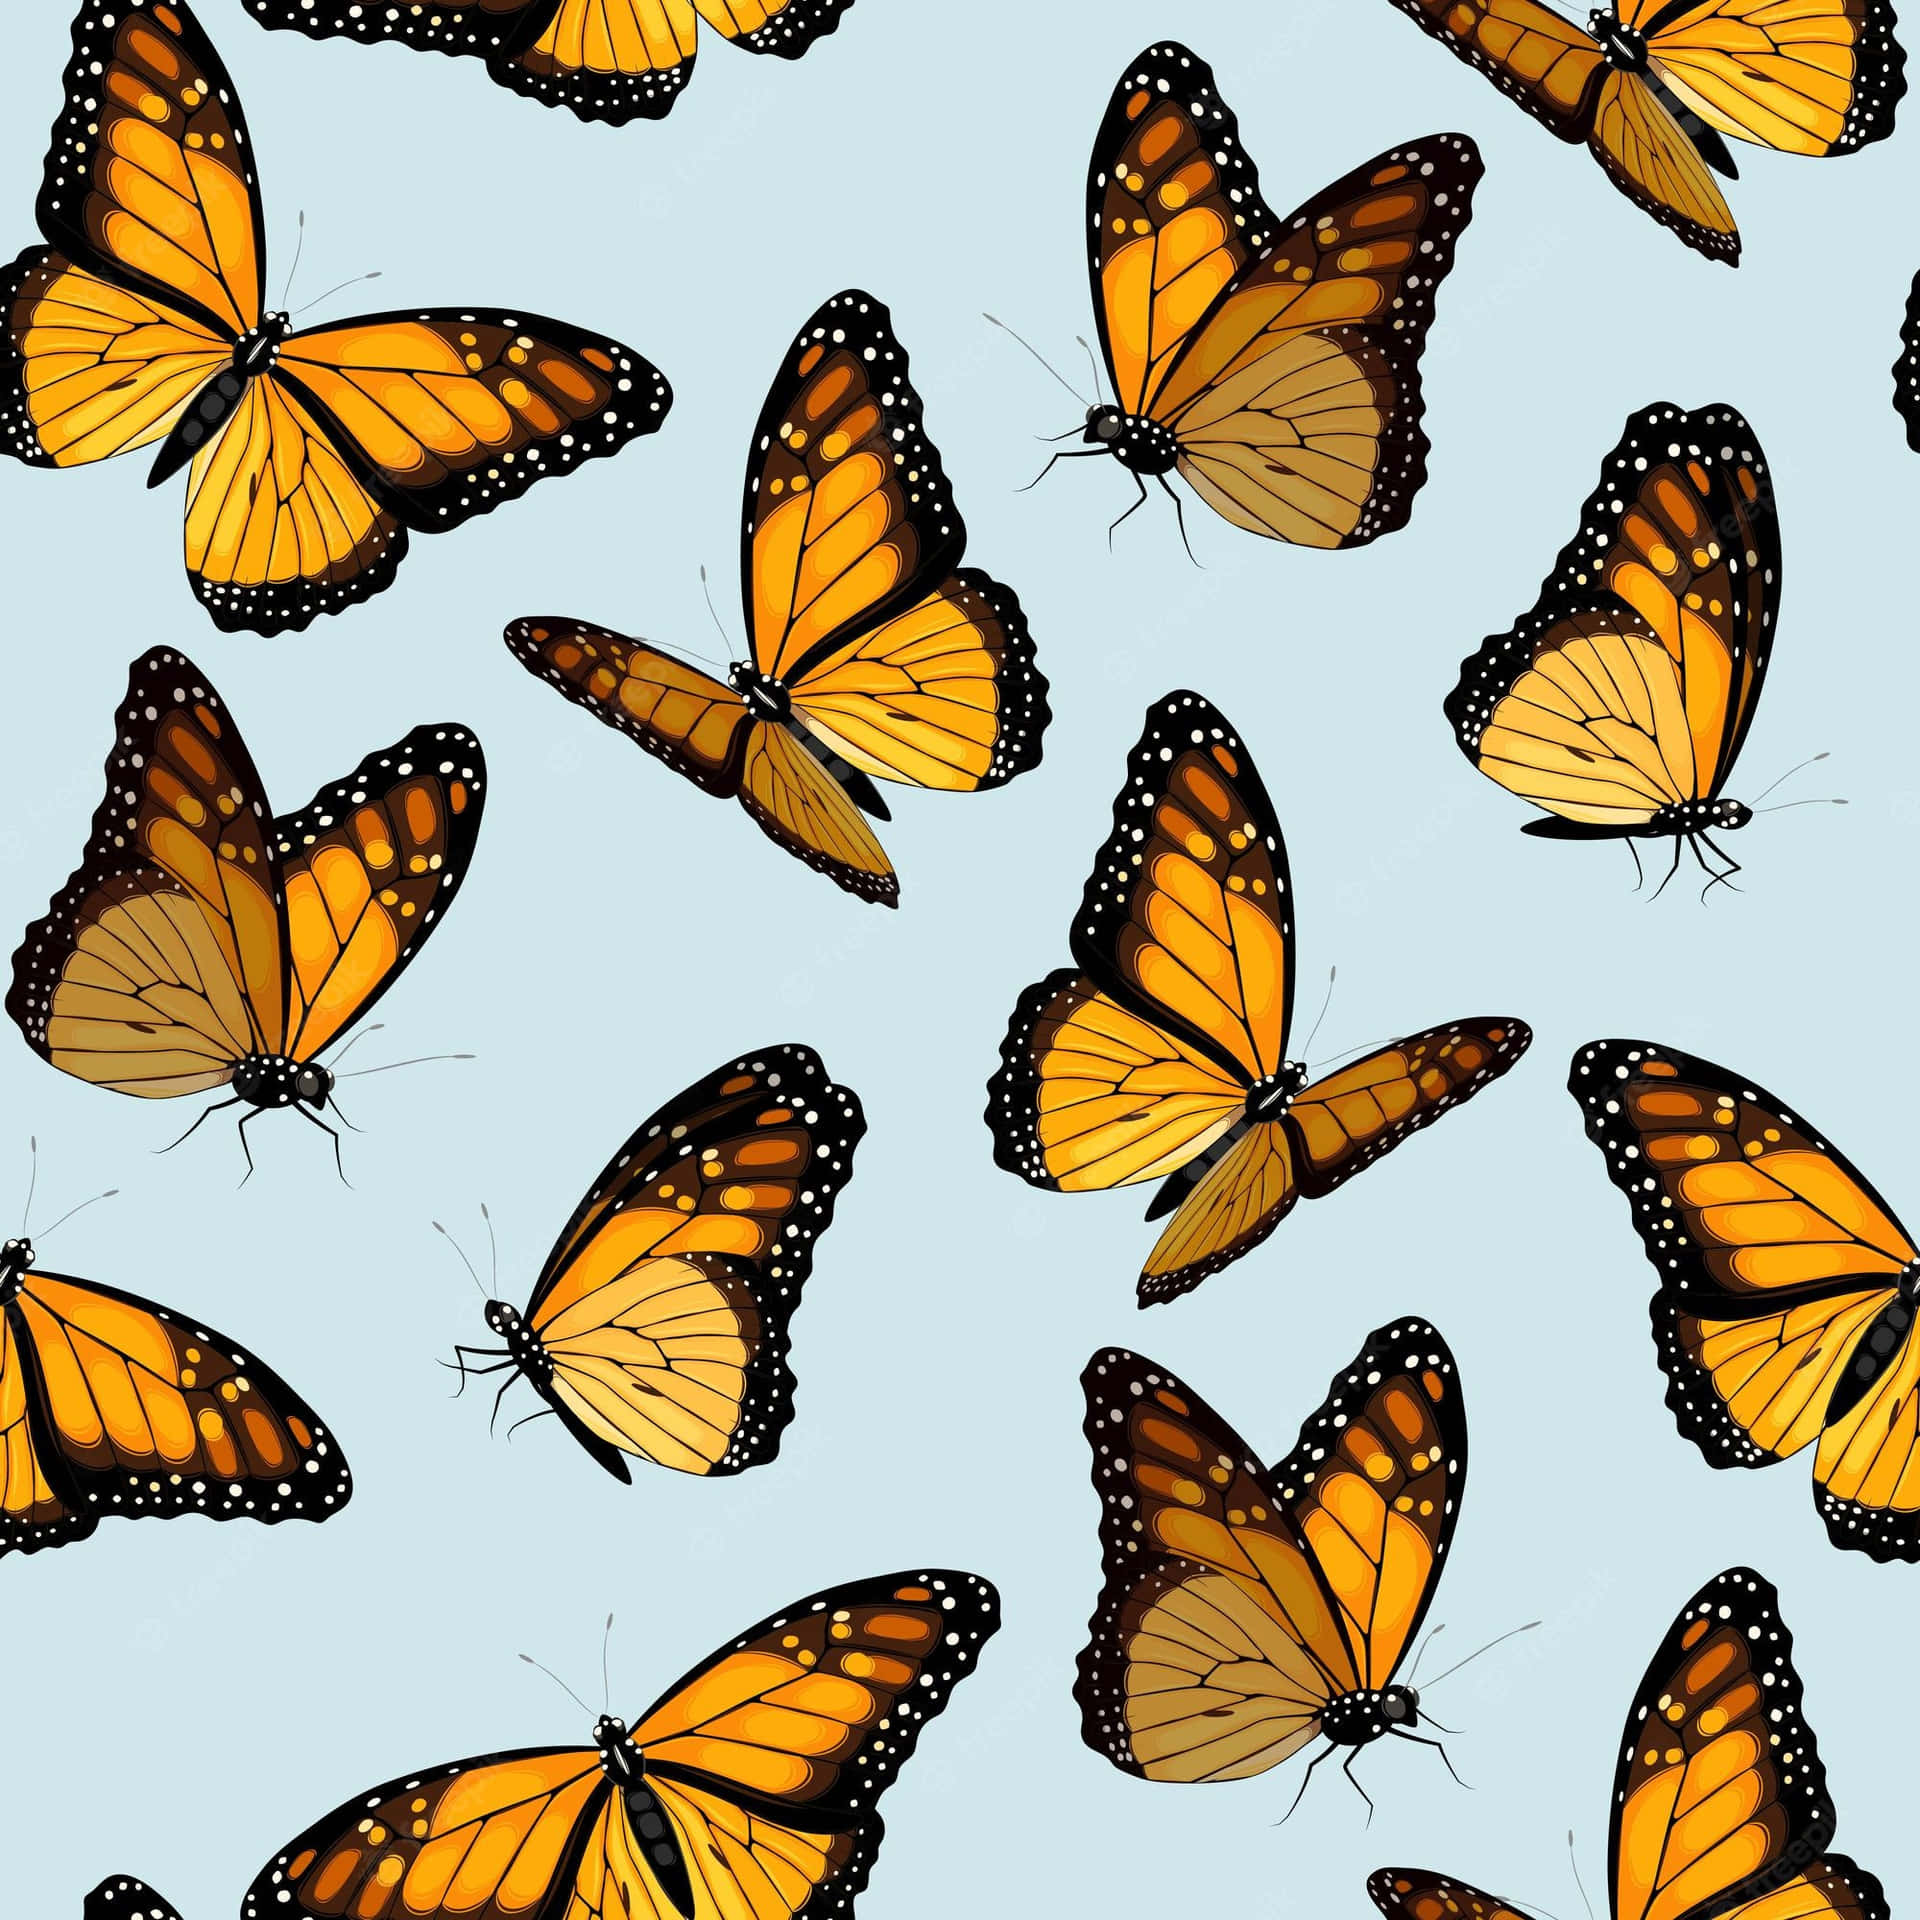 A Monarch Butterfly Enjoying Summer